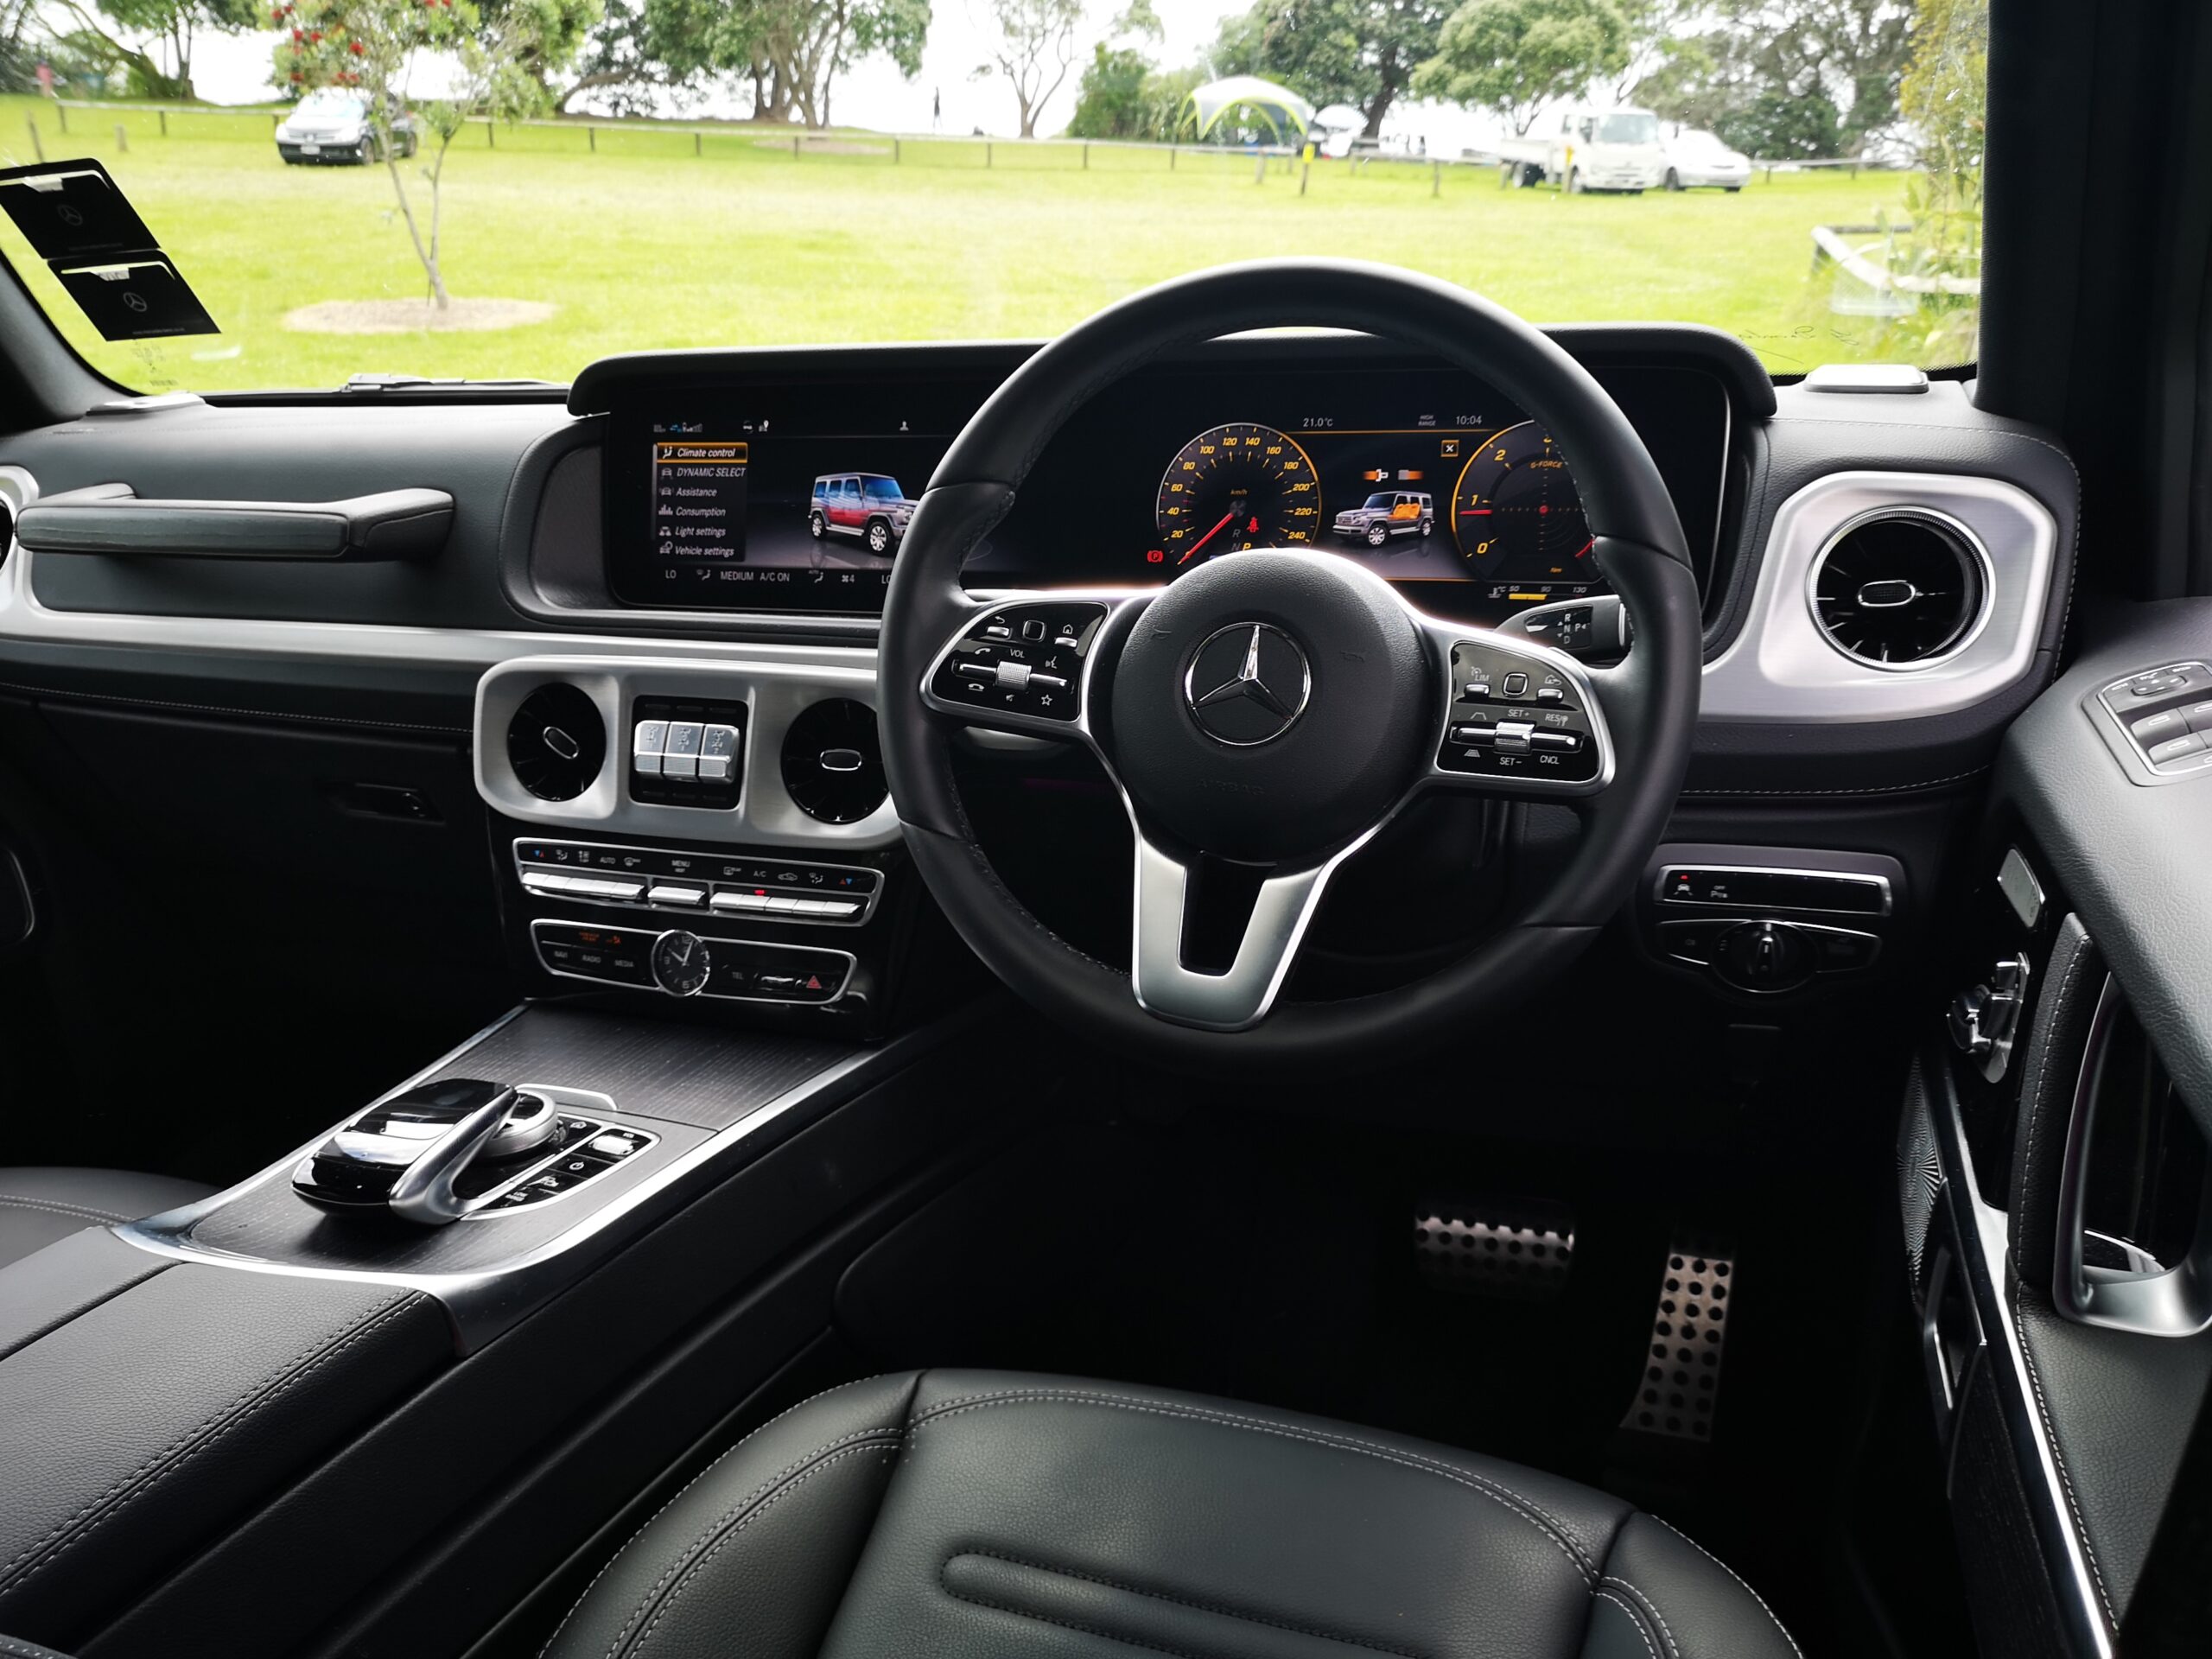 2021 Mercedes-Benz G400d review